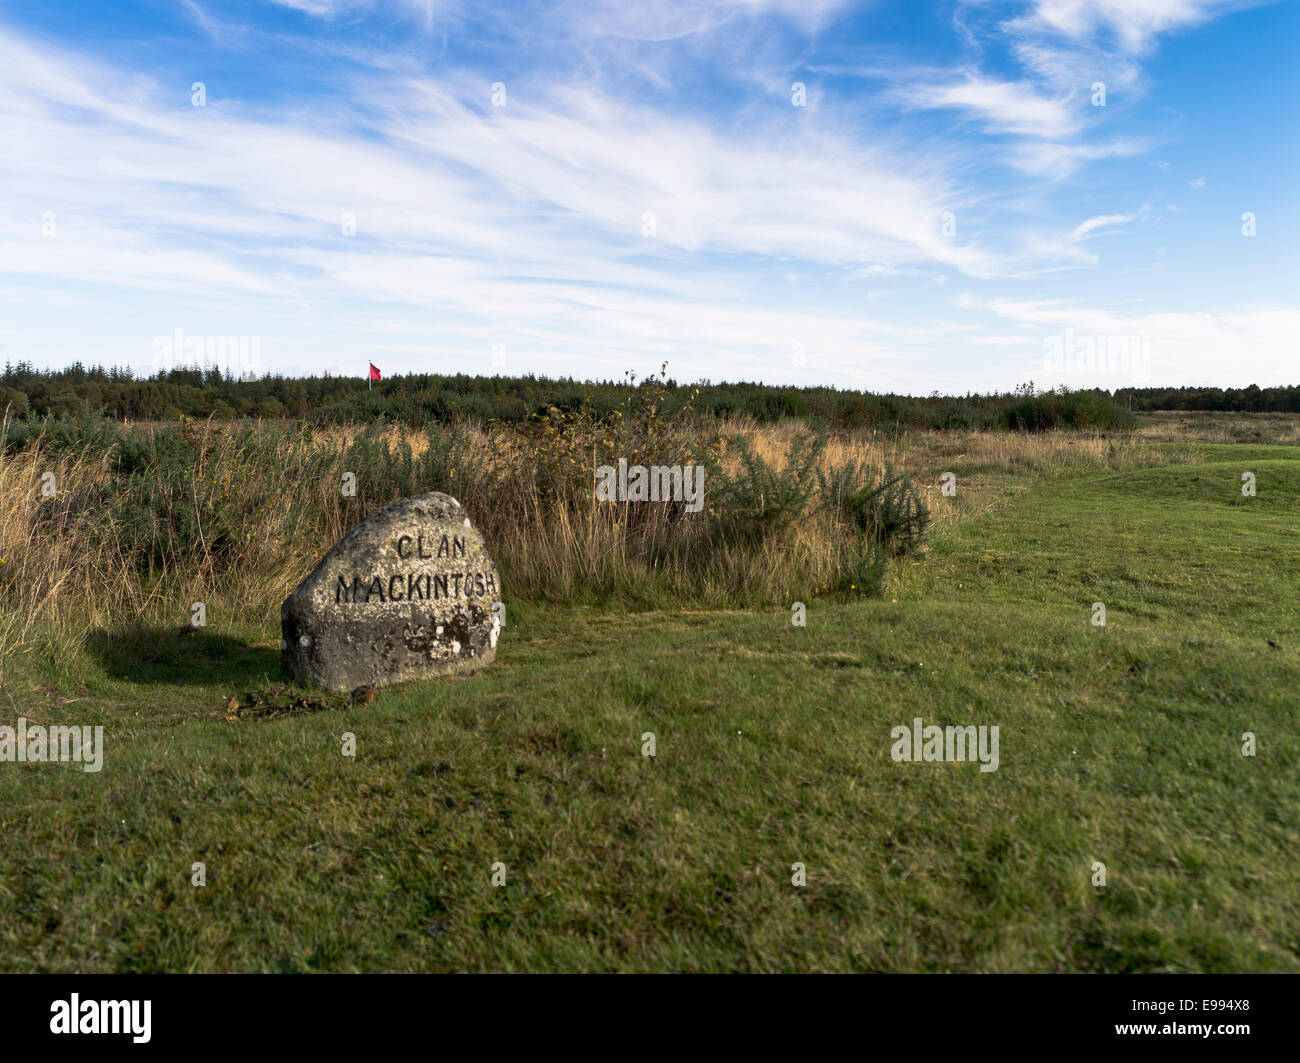 dh Mackintosh Clangräber Stein CULLODEN MOOR SCOTLAND Grave Highland Jacobite jacobites Rebellion 1745 Battlefield 1746 Schlacht schottische Schlachten Stockfoto